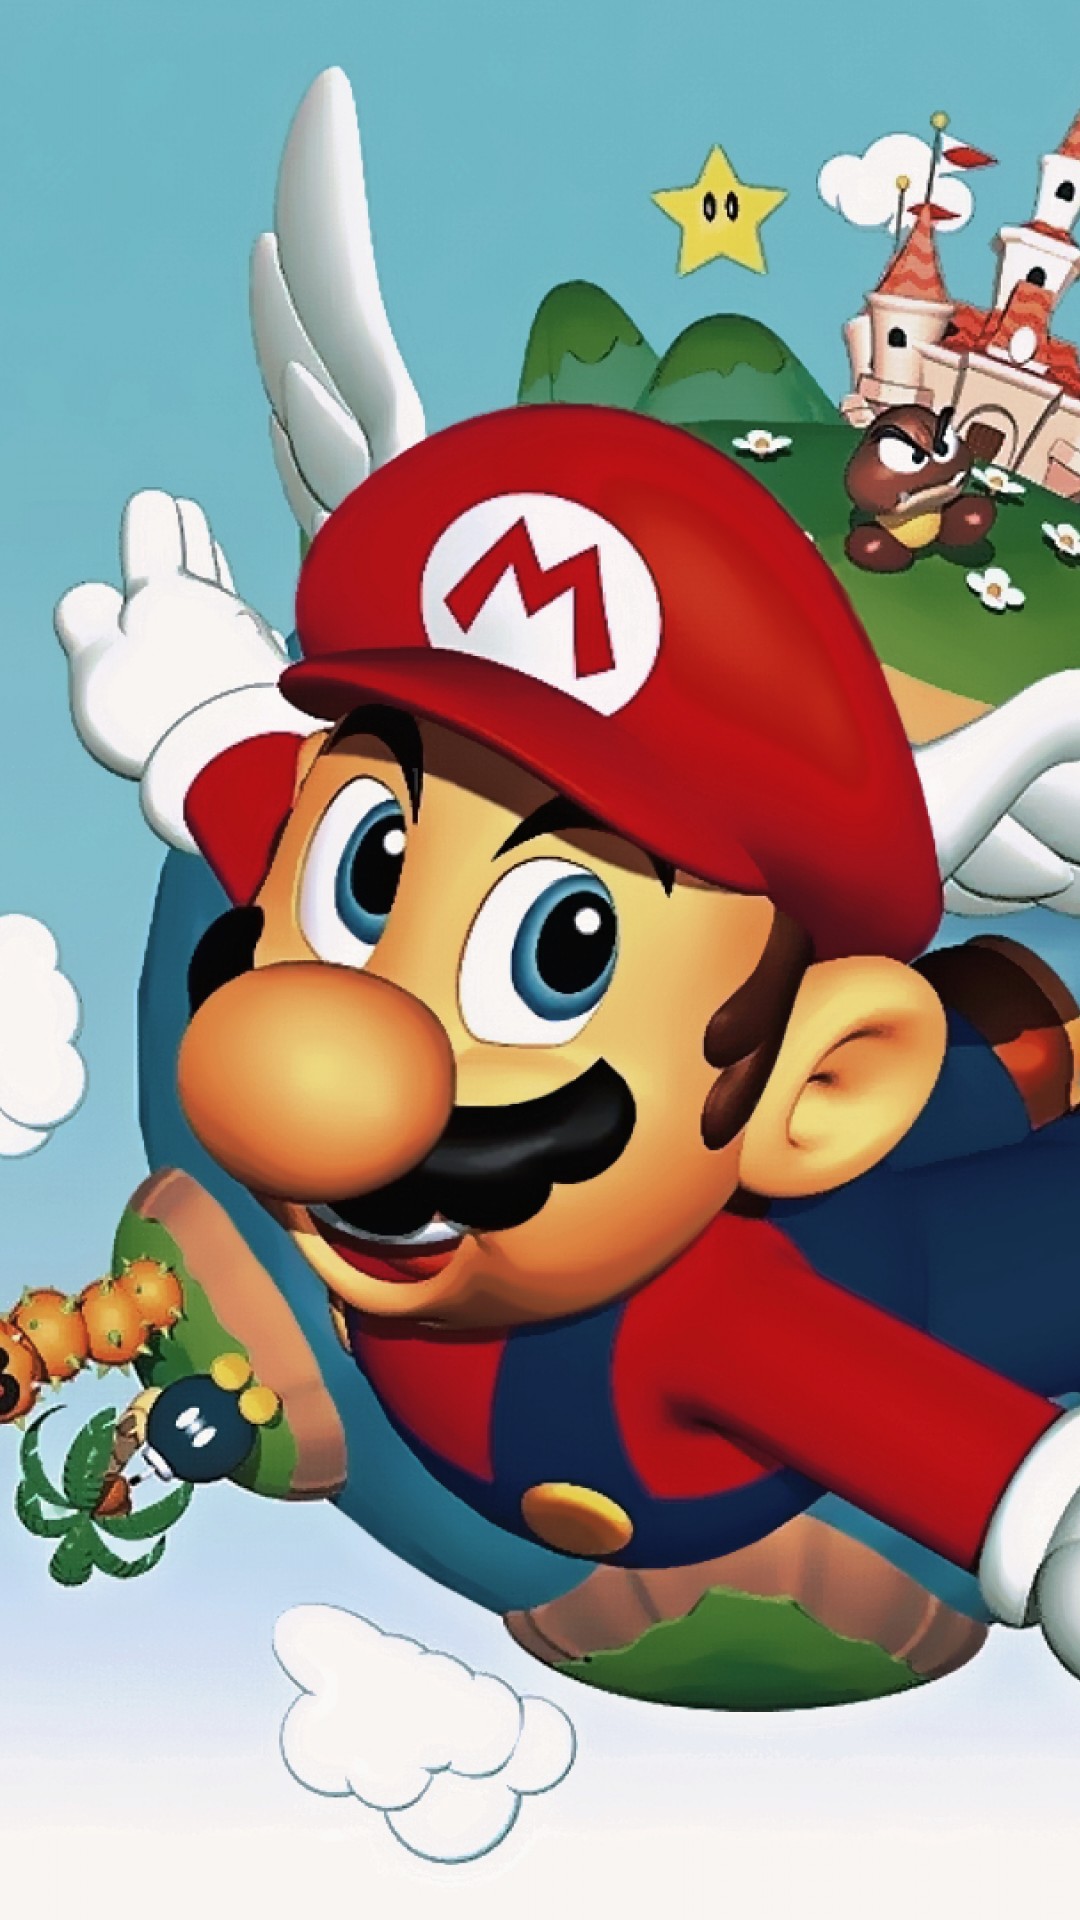 Super Mario 64 Quotes iPhone 6 Plus - Wallpaper ...